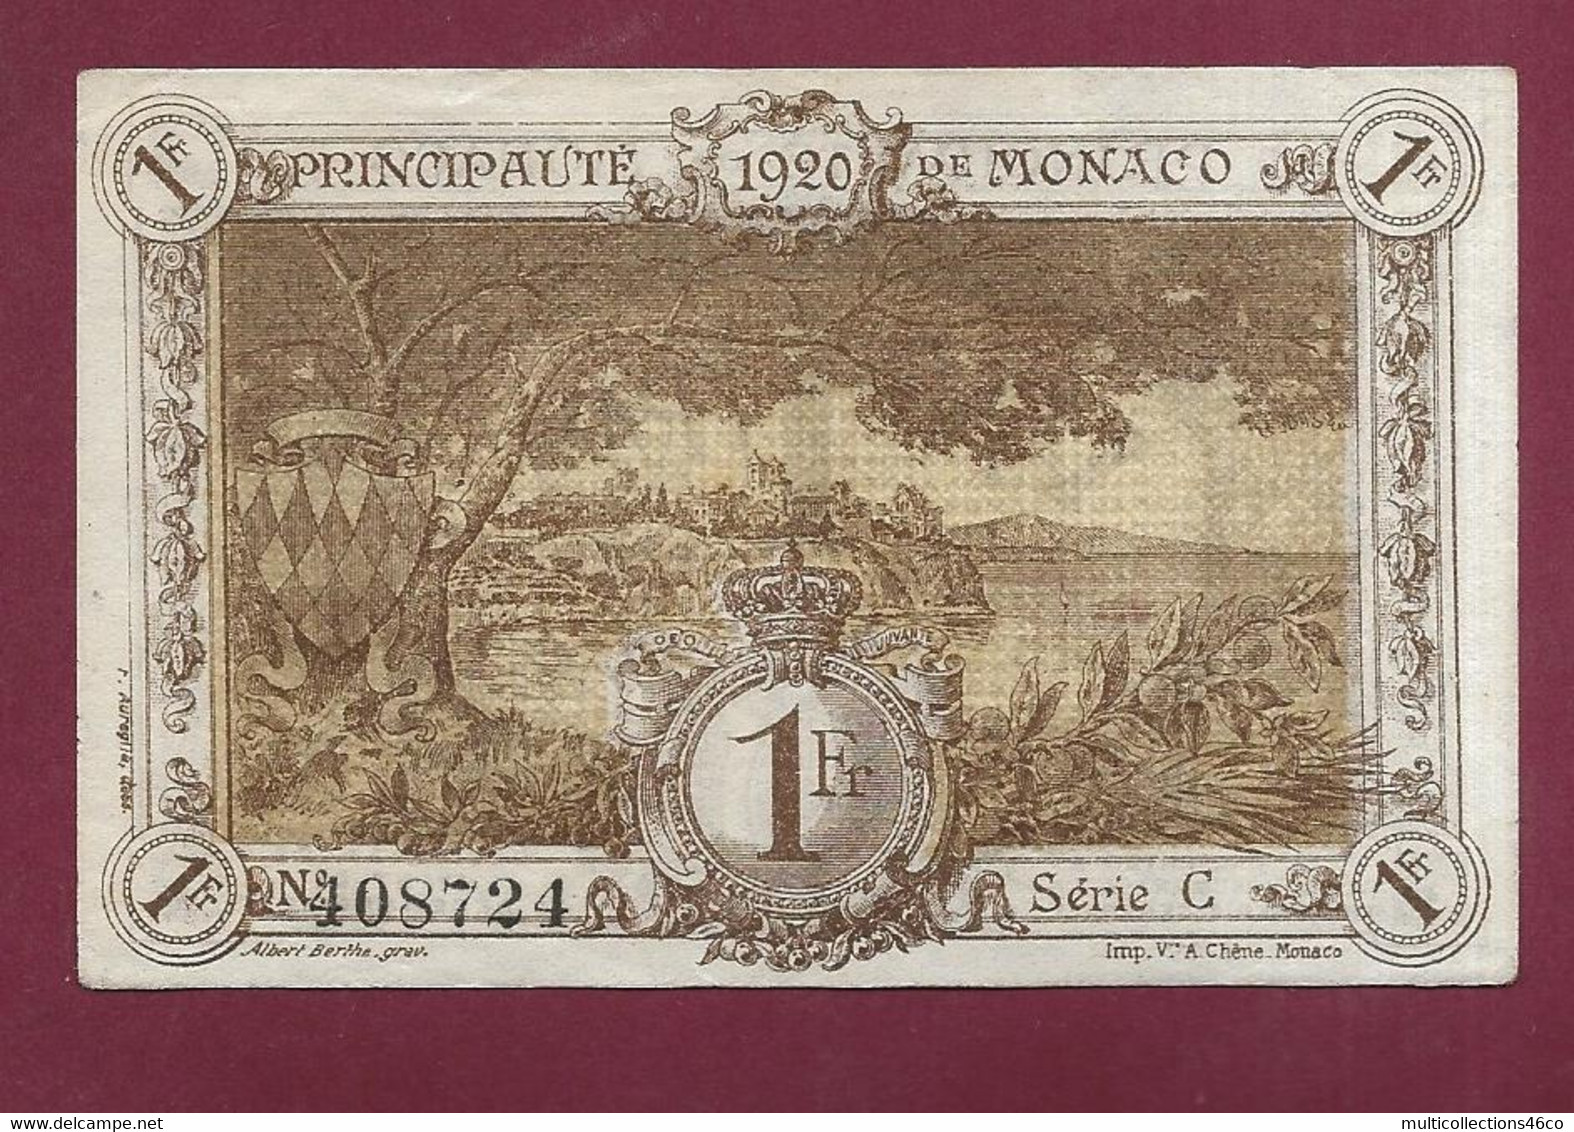 120422 - Billet PRINCIPAUTE DE MONACO VN 1 FRANC 1920 Remboursement Trésorerie Générale N°408724 Série C - Neuf - Mónaco